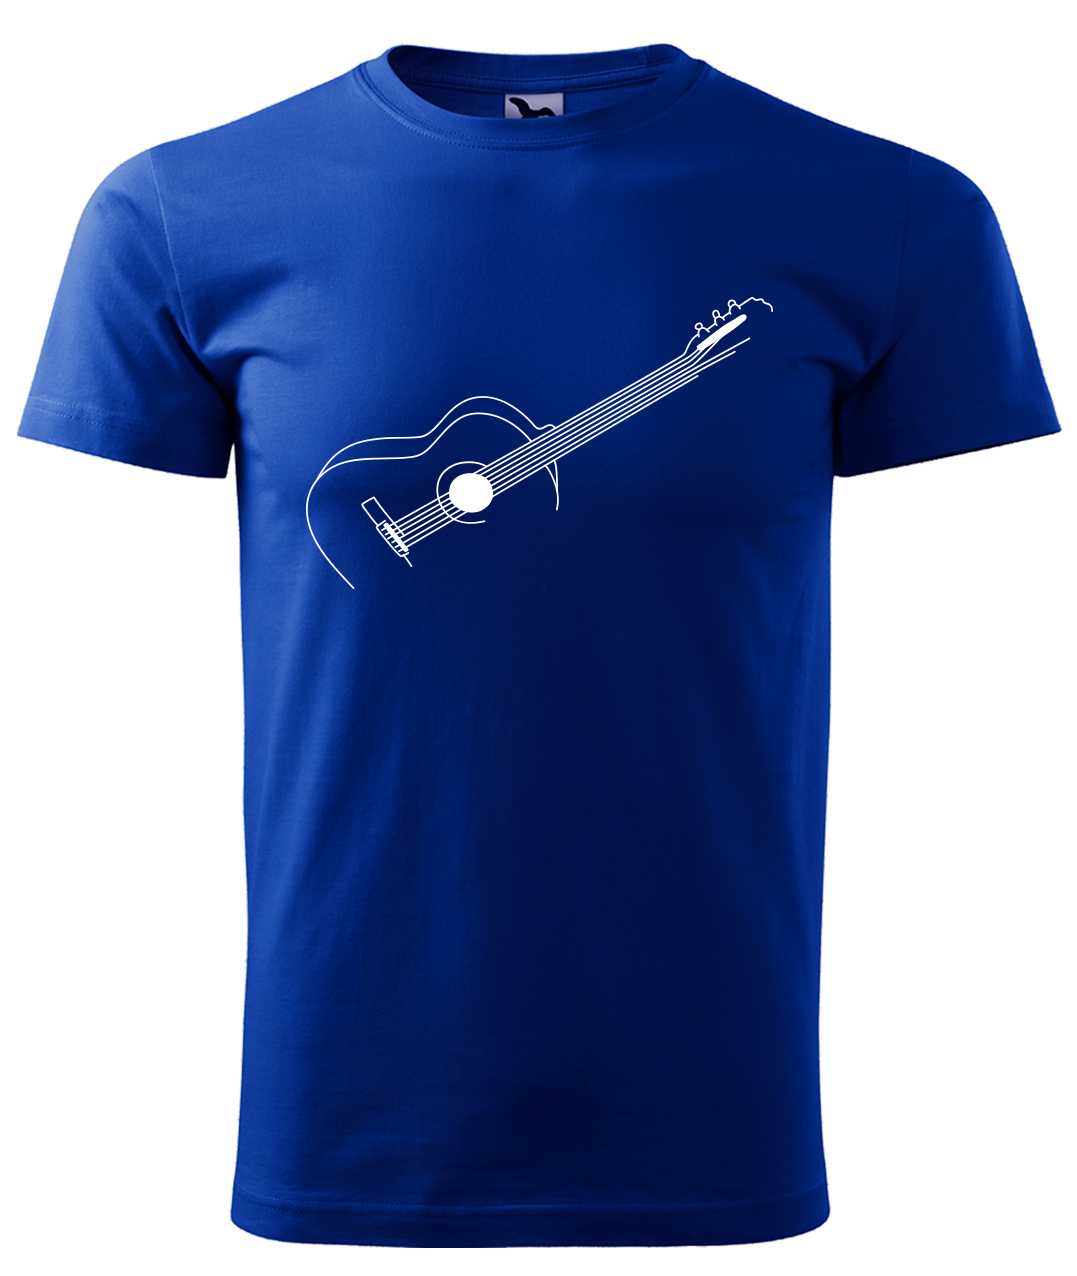 Dětské tričko s kytarou - Stylizovaná kytara Velikost: 12 let / 158 cm, Barva: Královská modrá (05), Délka rukávu: Krátký rukáv